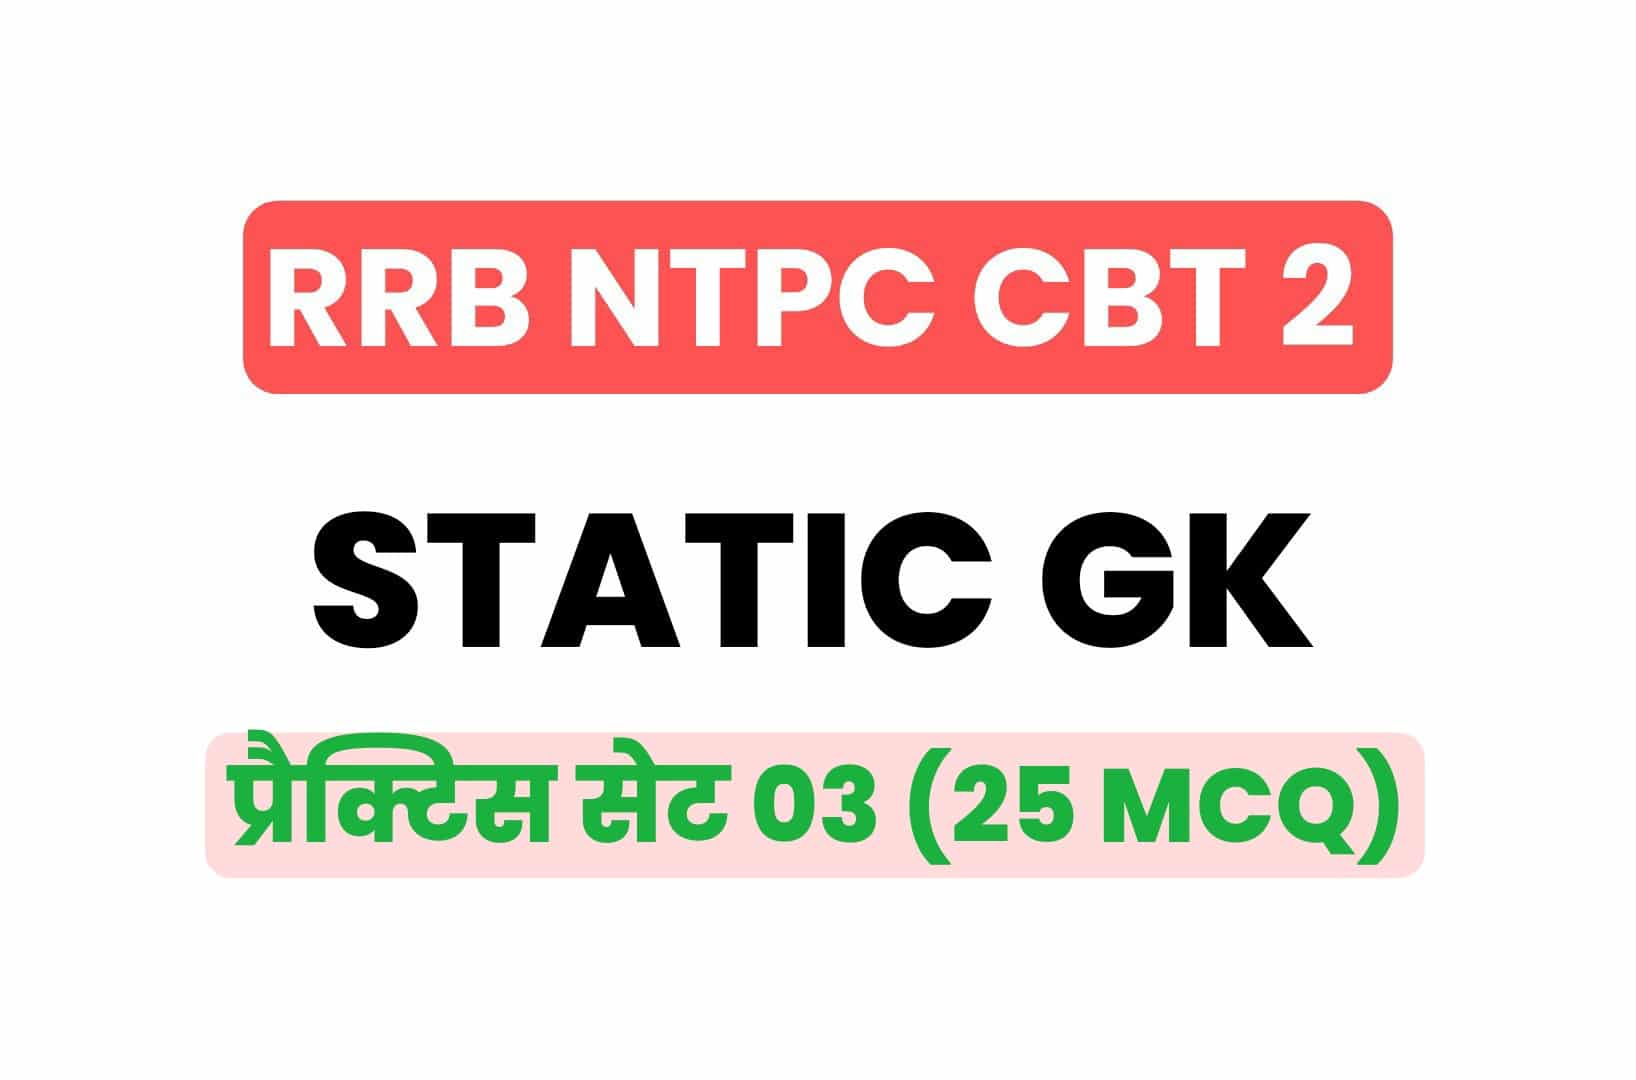 RRB NTPC CBT 2 Static GK प्रैक्टिस सेट - 03: विगत वर्षों में पूछे गये महत्वपूर्ण प्रश्न, जरूर देखें